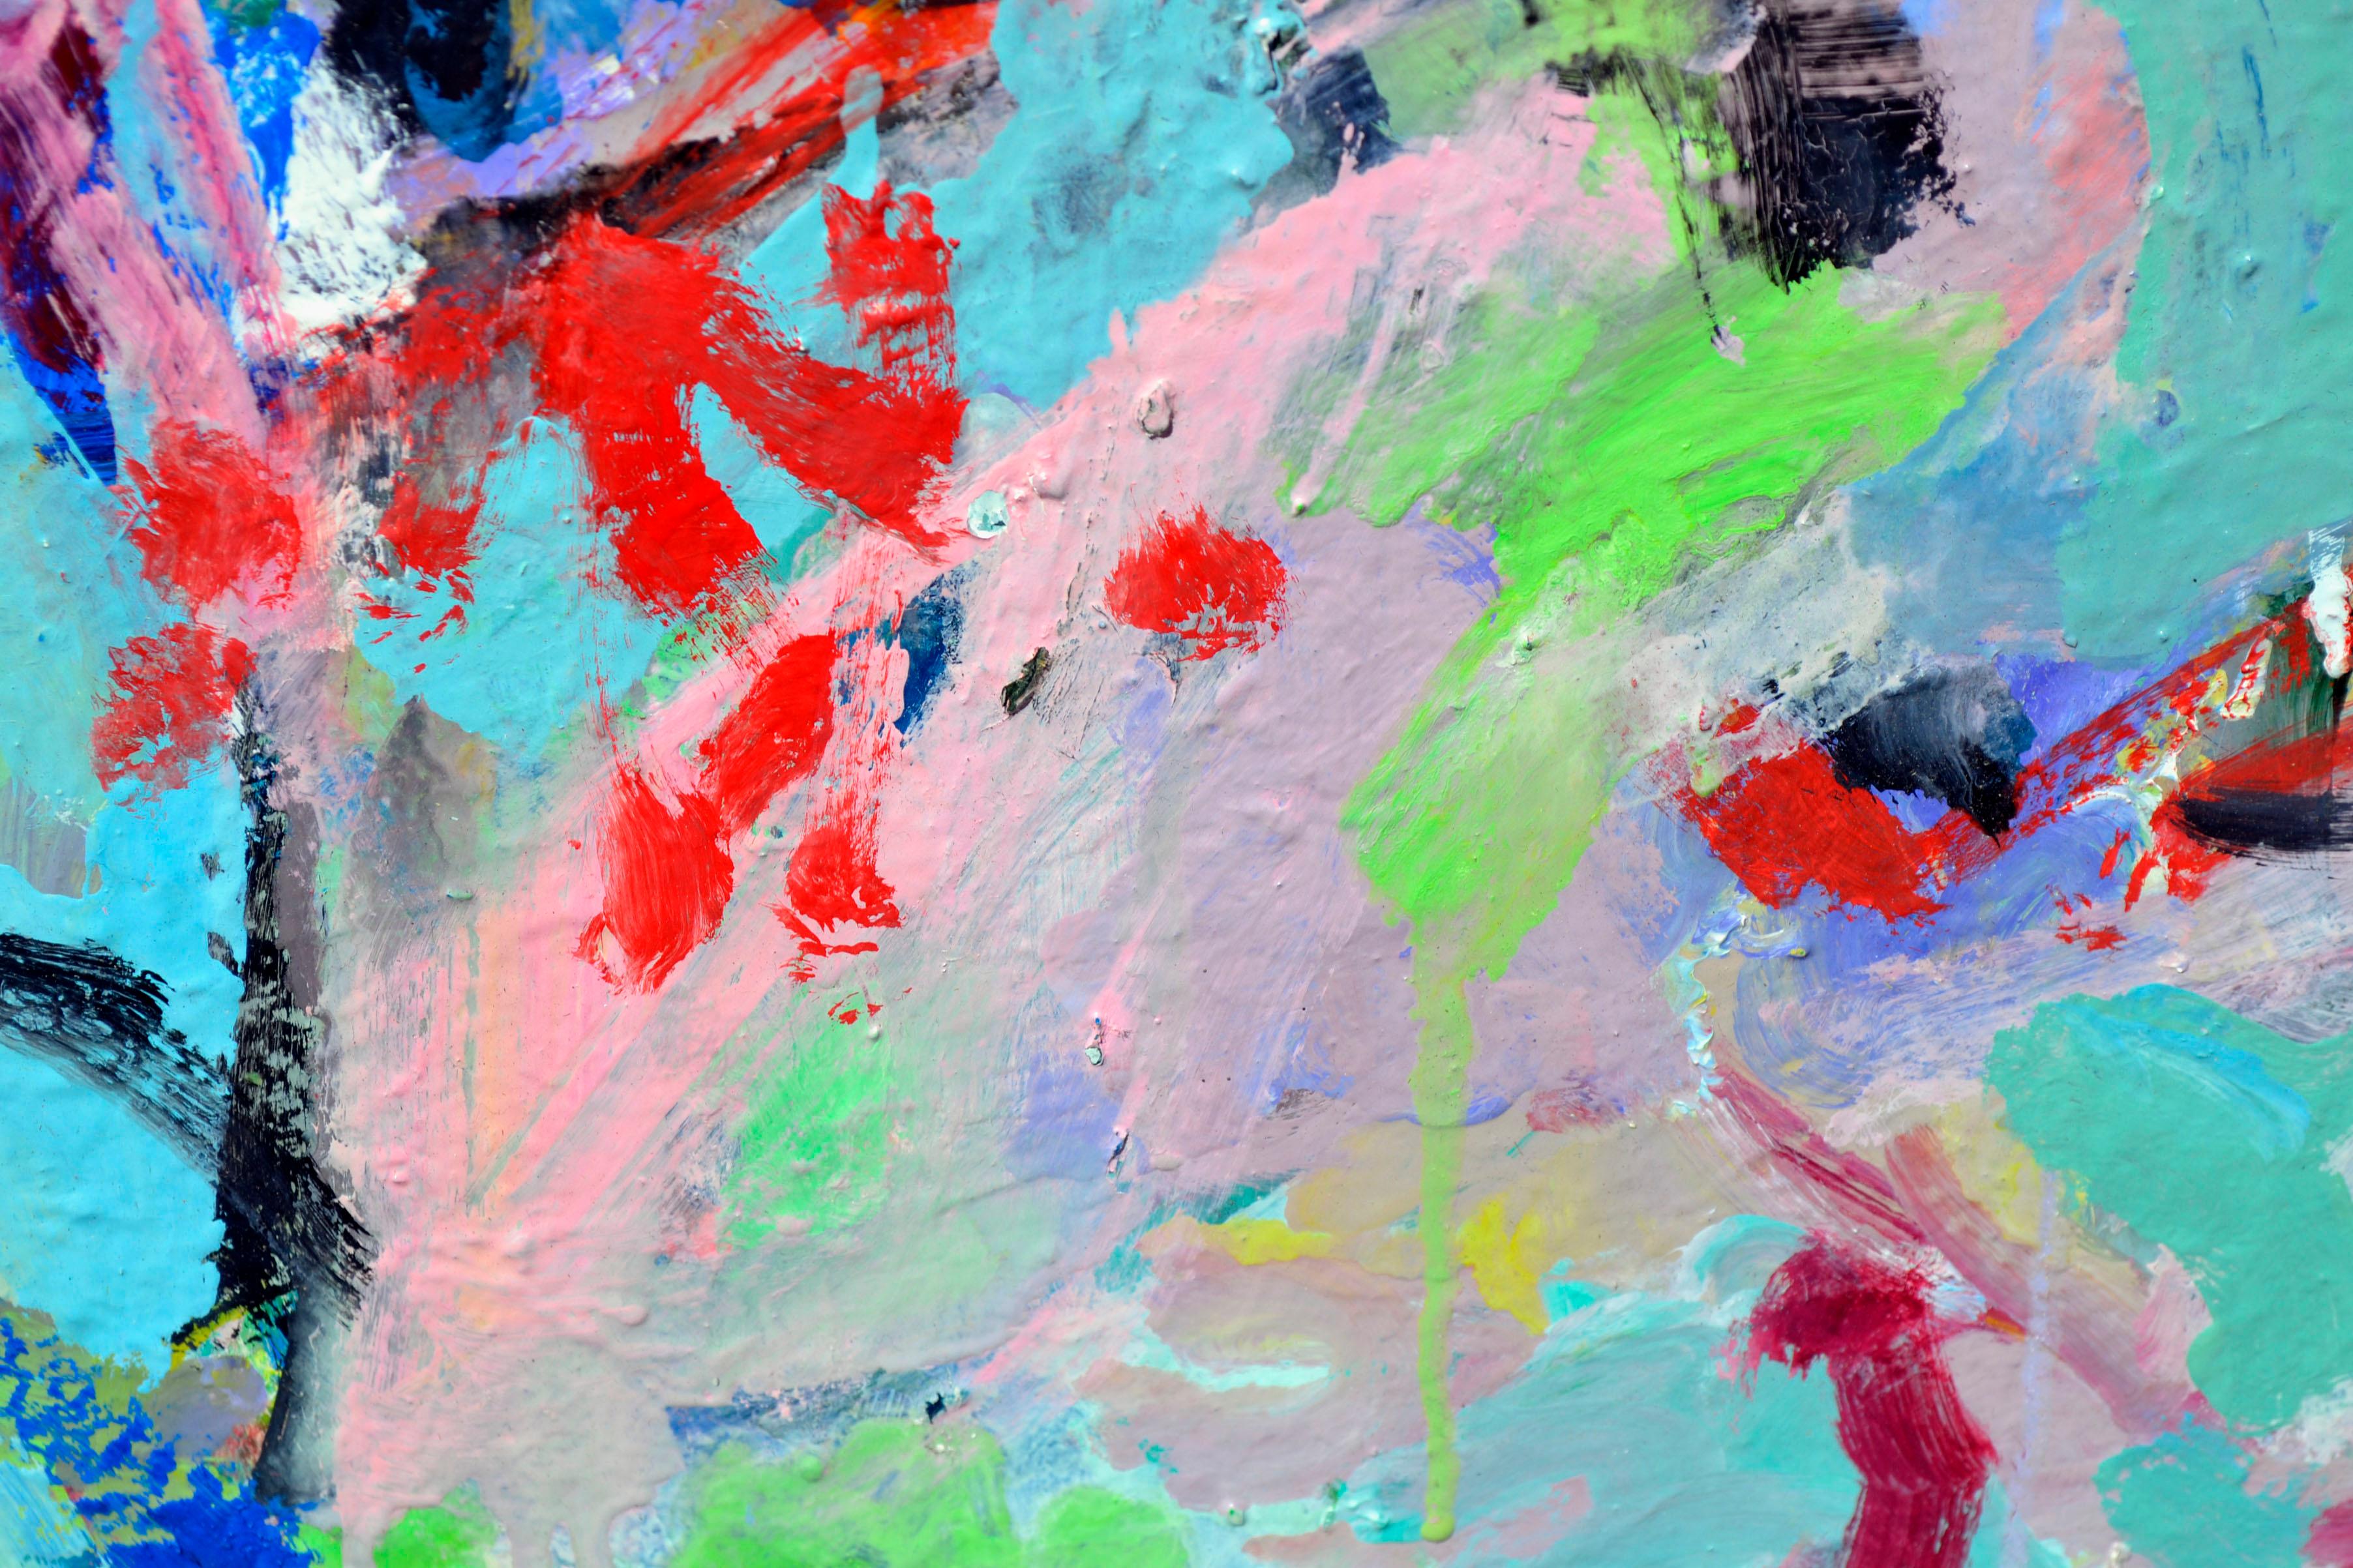 Leuchtendes, farbenfrohes abstraktes expressionistisches Werk des Künstlers Anthony Rappa aus Monterey, Kalifornien (Amerikaner, 20. Jahrhundert). Schwerer, strukturierter Farbauftrag. Unsigniert, aus einer Sammlung seiner Werke. Ungerahmt. Bild: 24